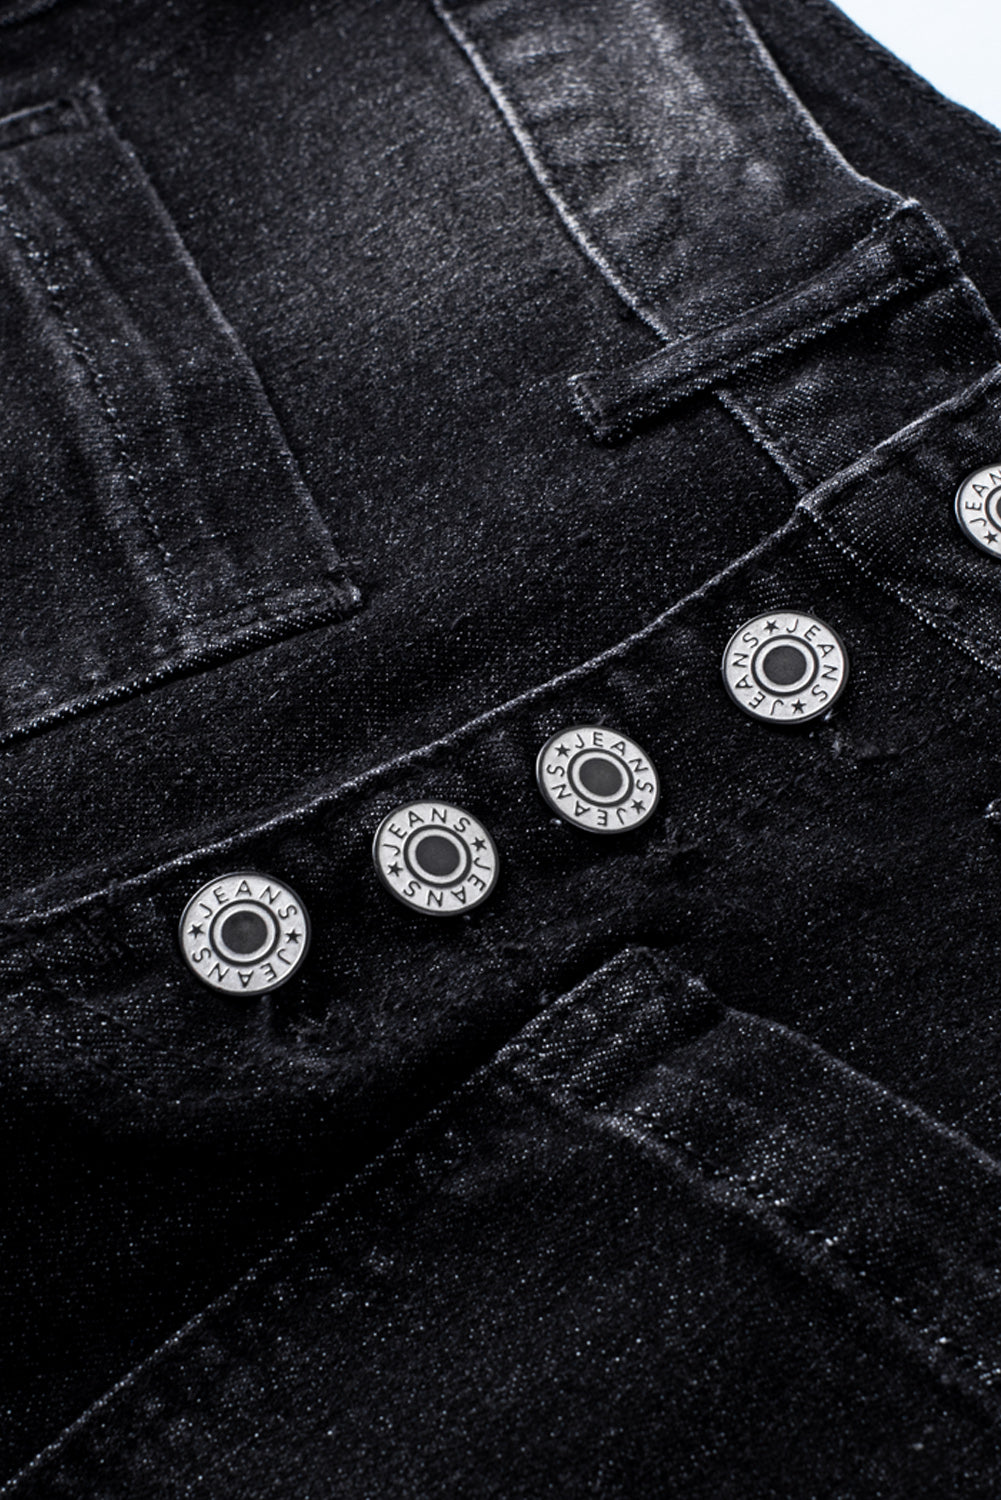 Hellblaue Skinny-Jeans mit Knopfleiste und Taschen